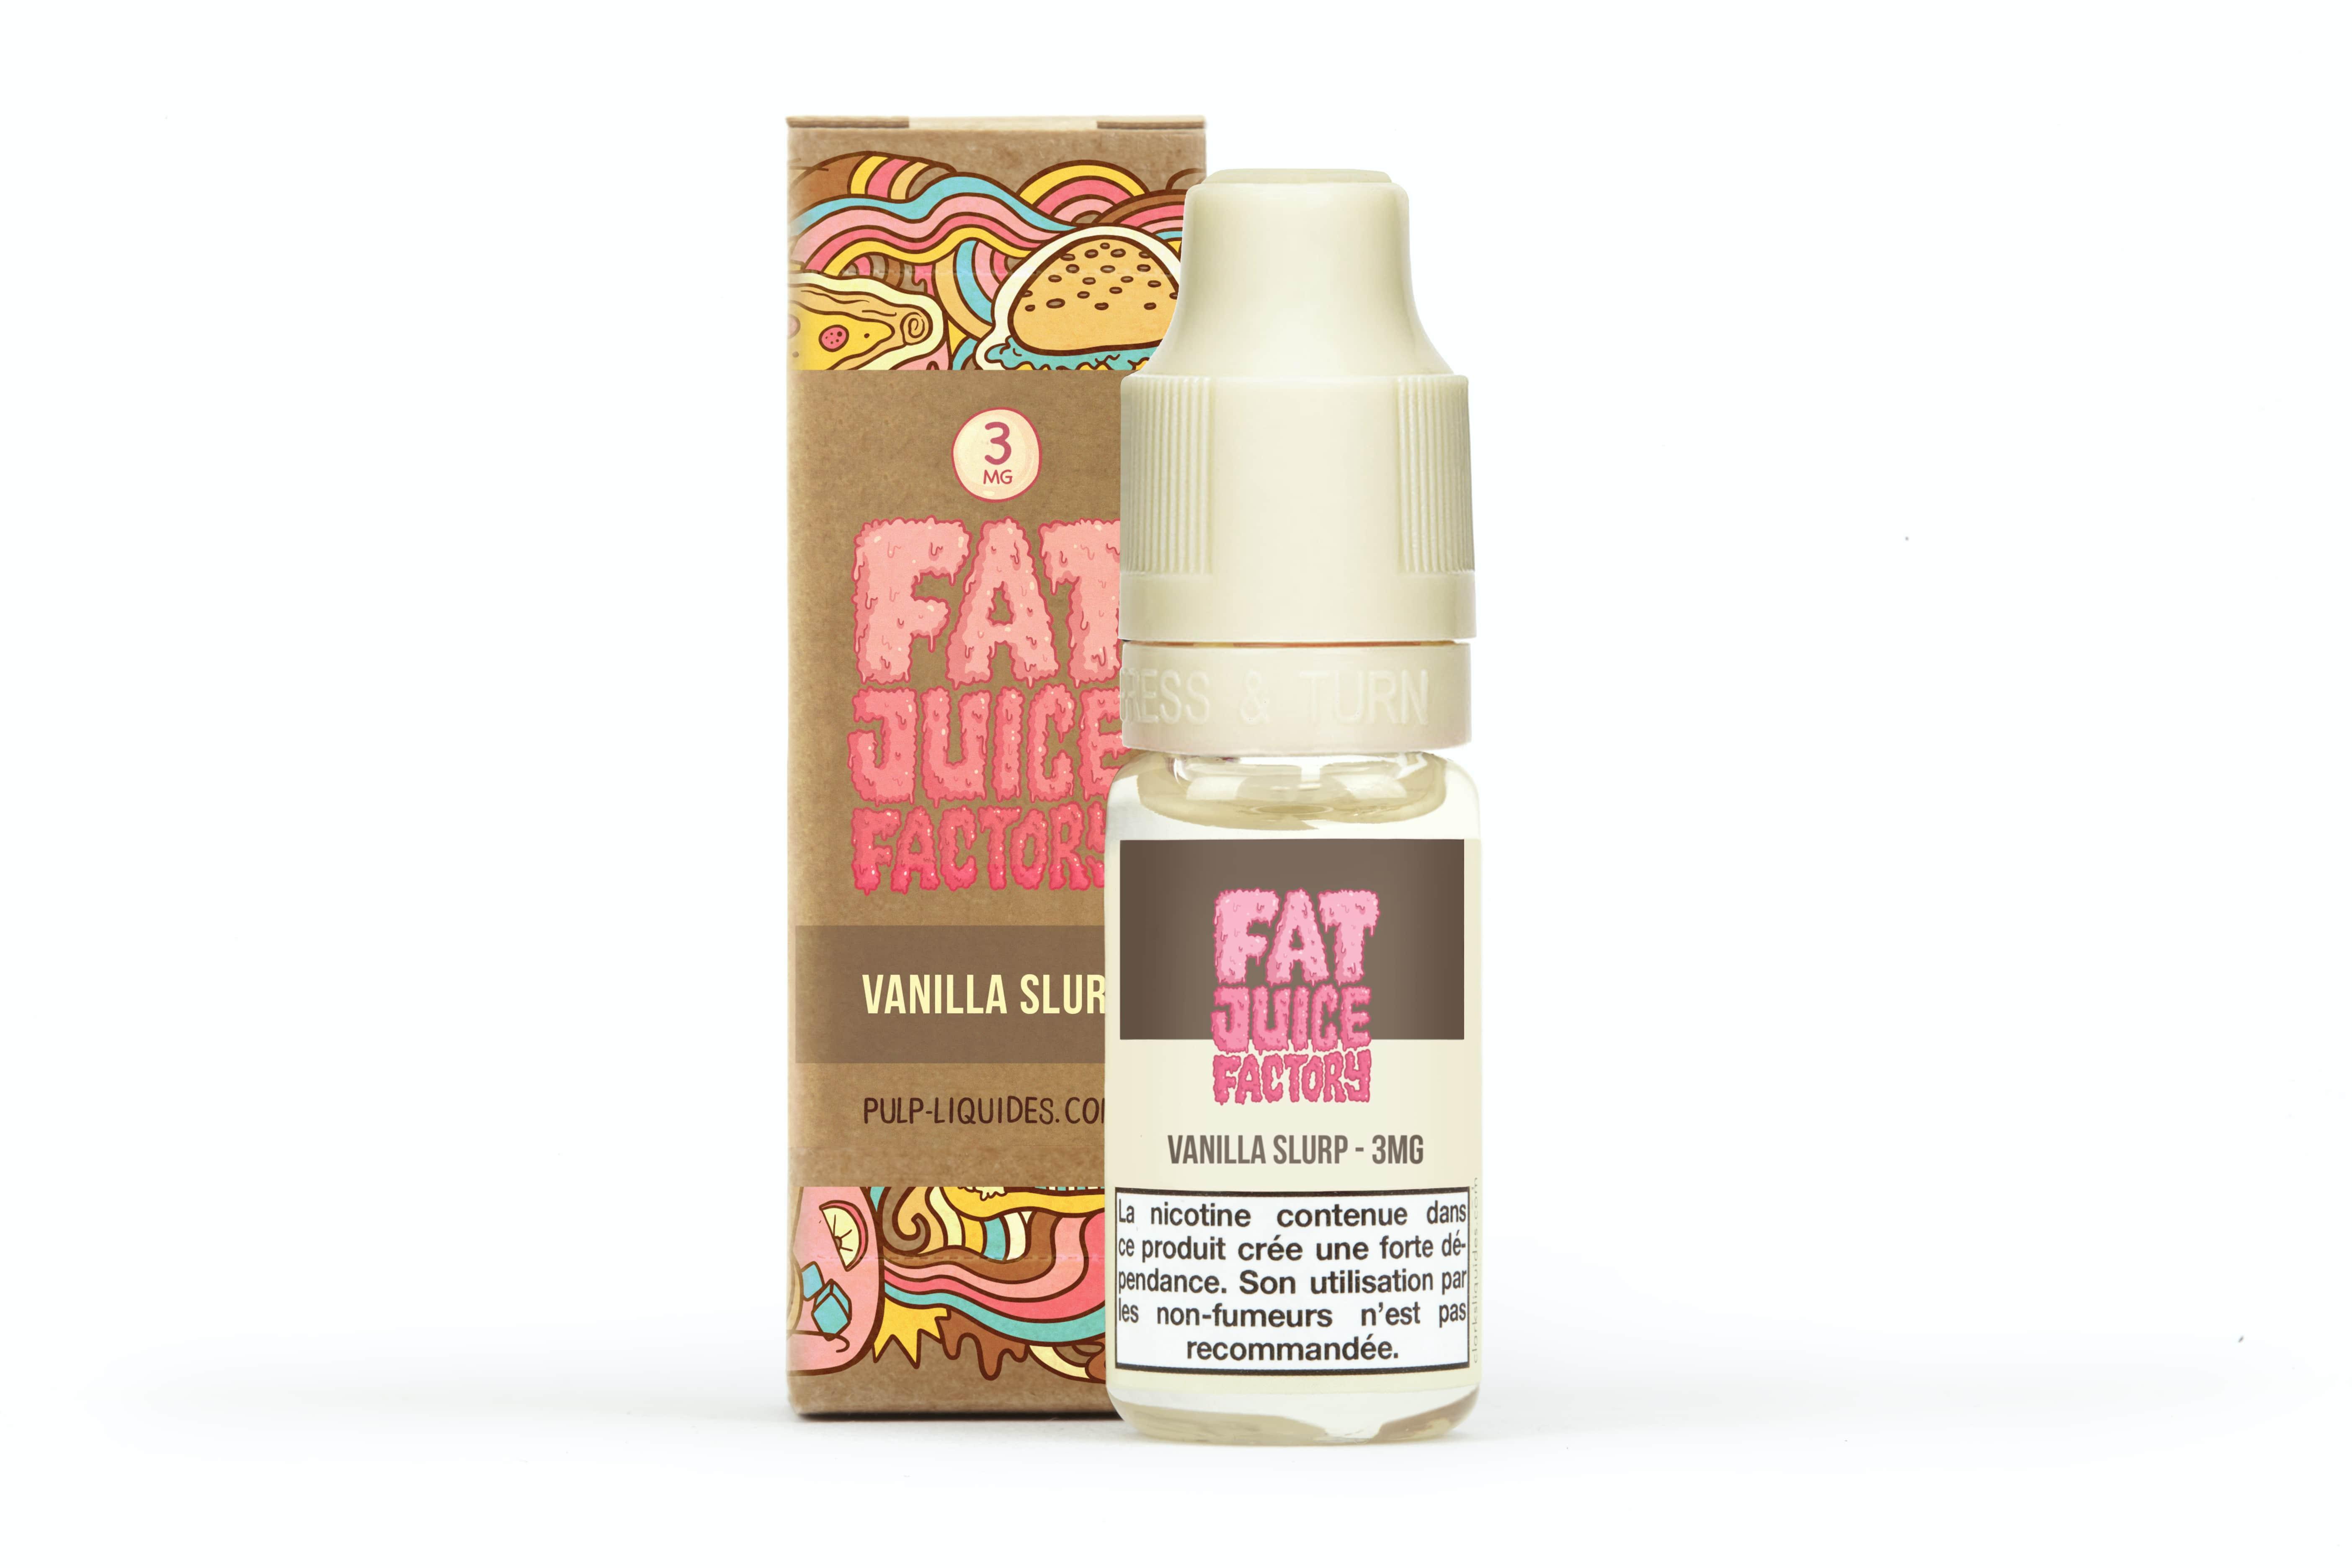 Vanilla Slurp Fat Juice Factory